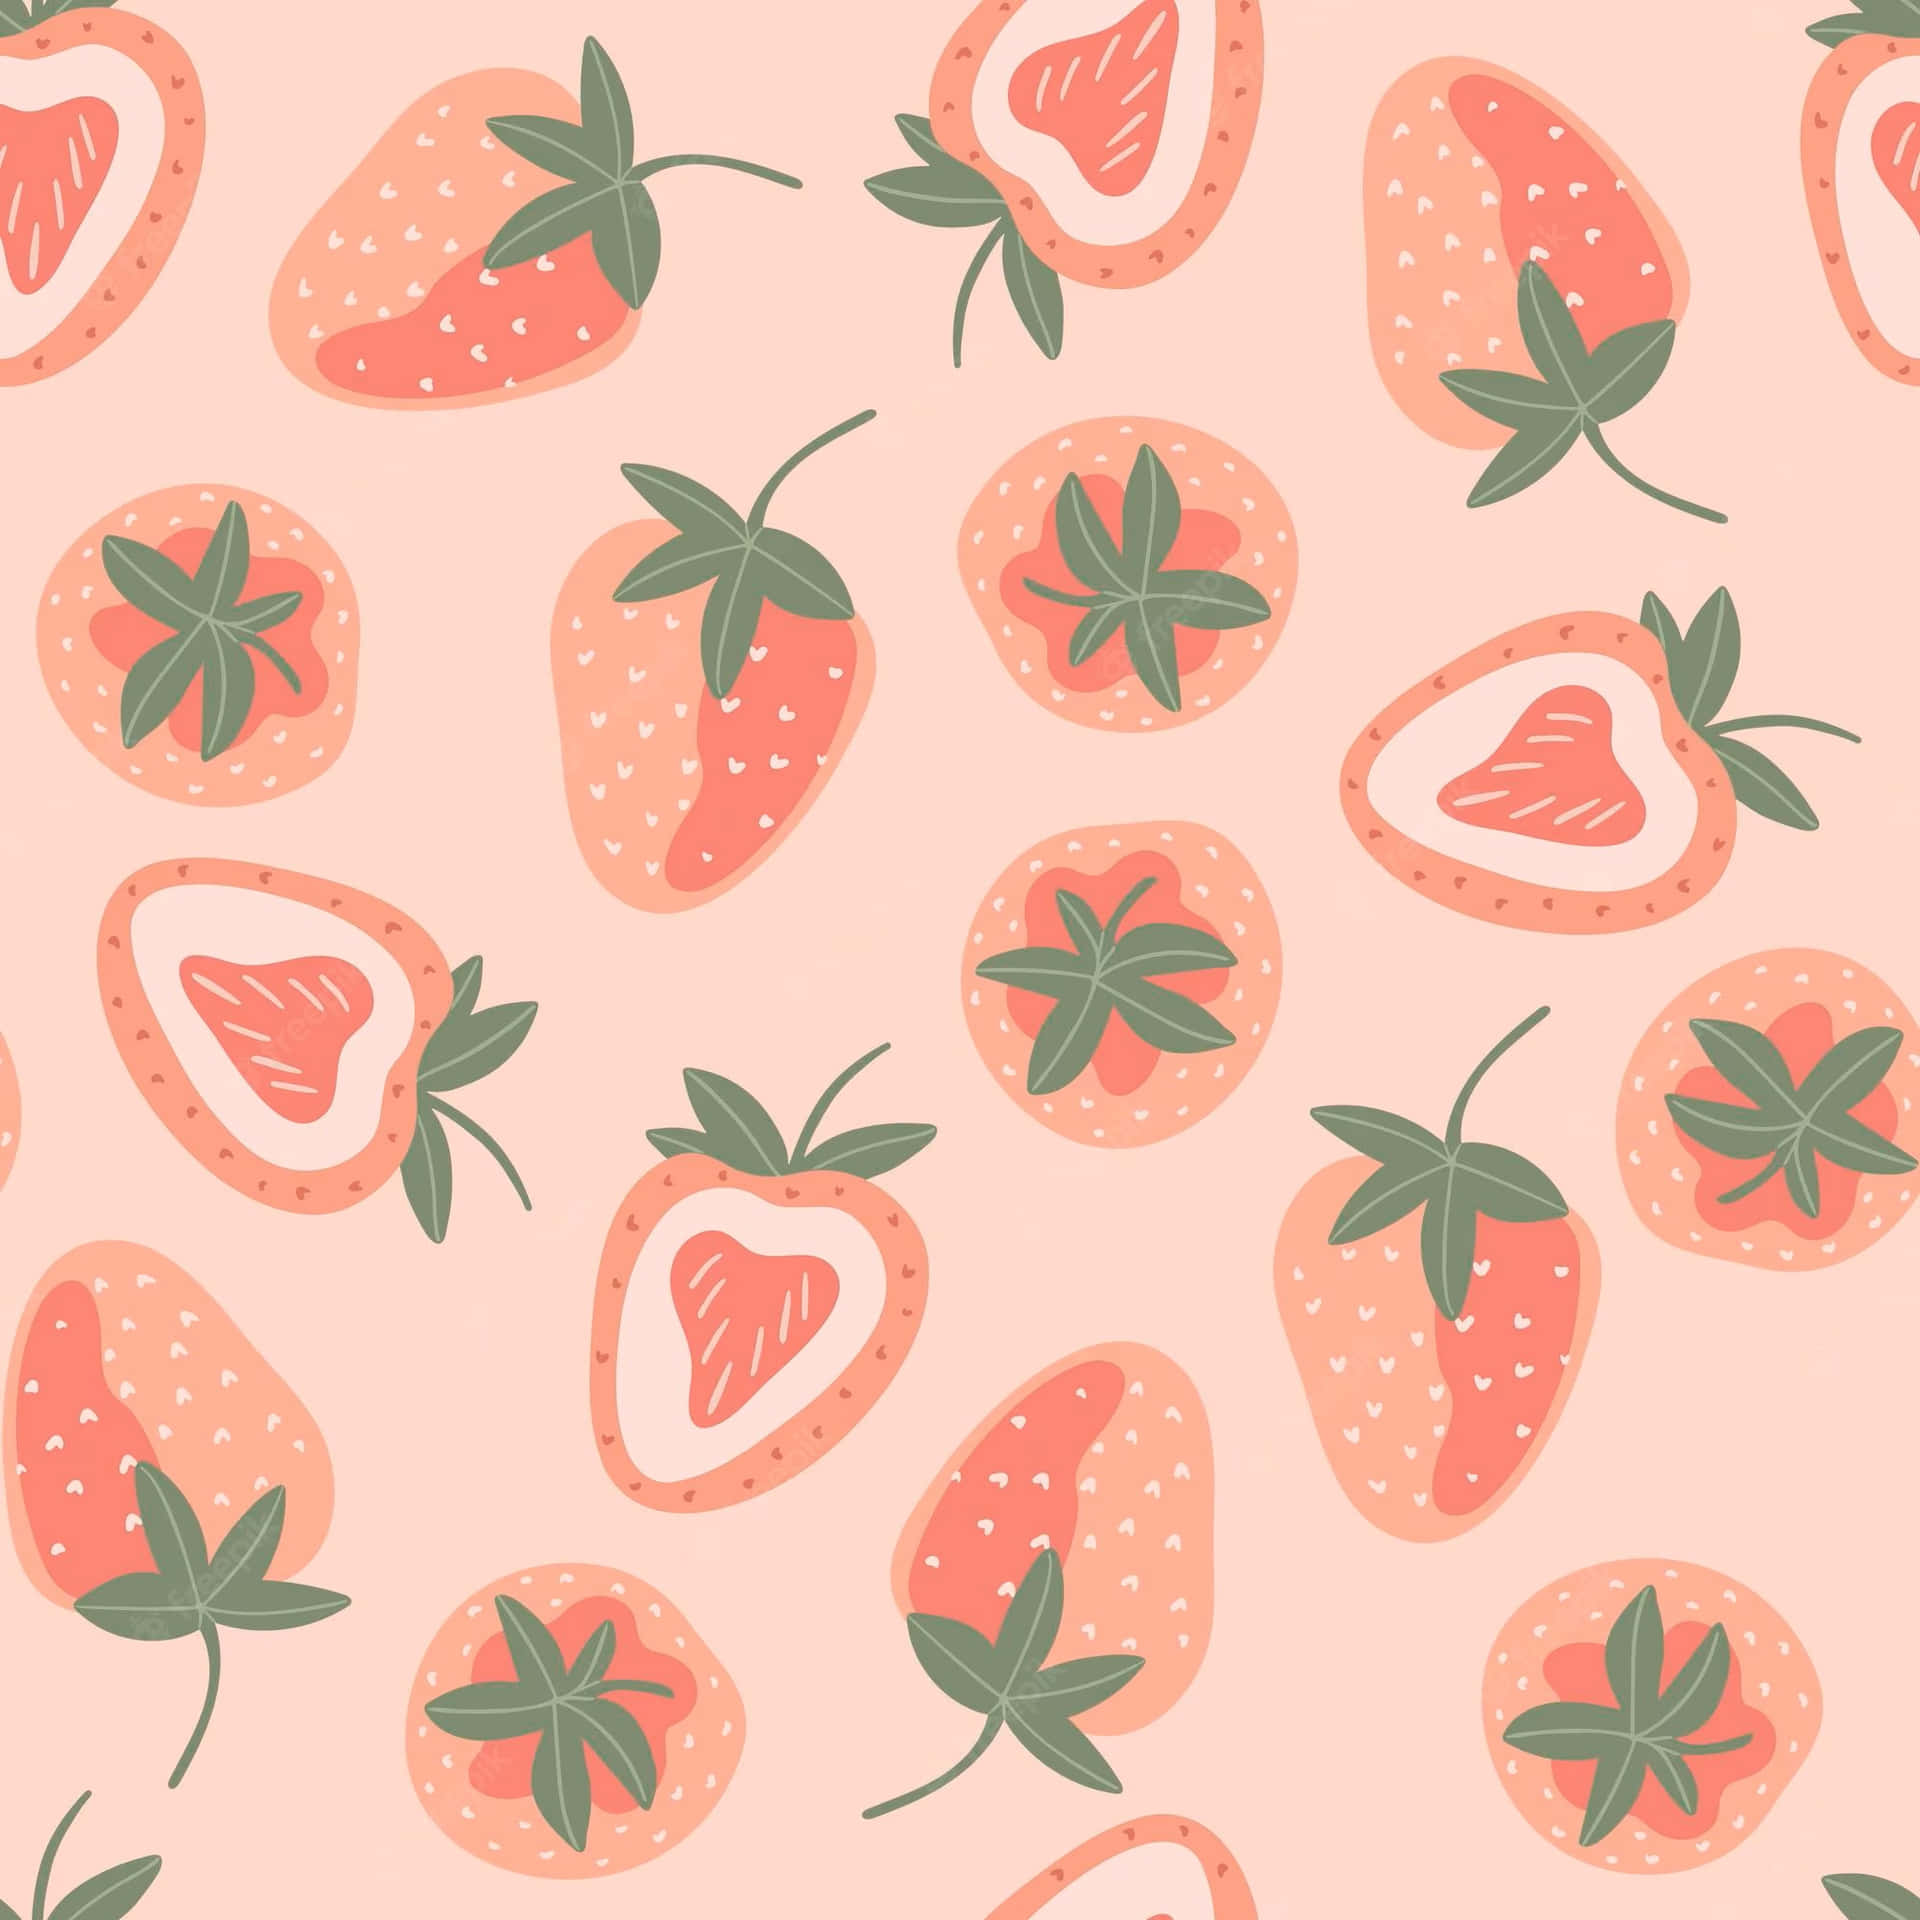 Bezauberndepastell-erdbeere Wallpaper